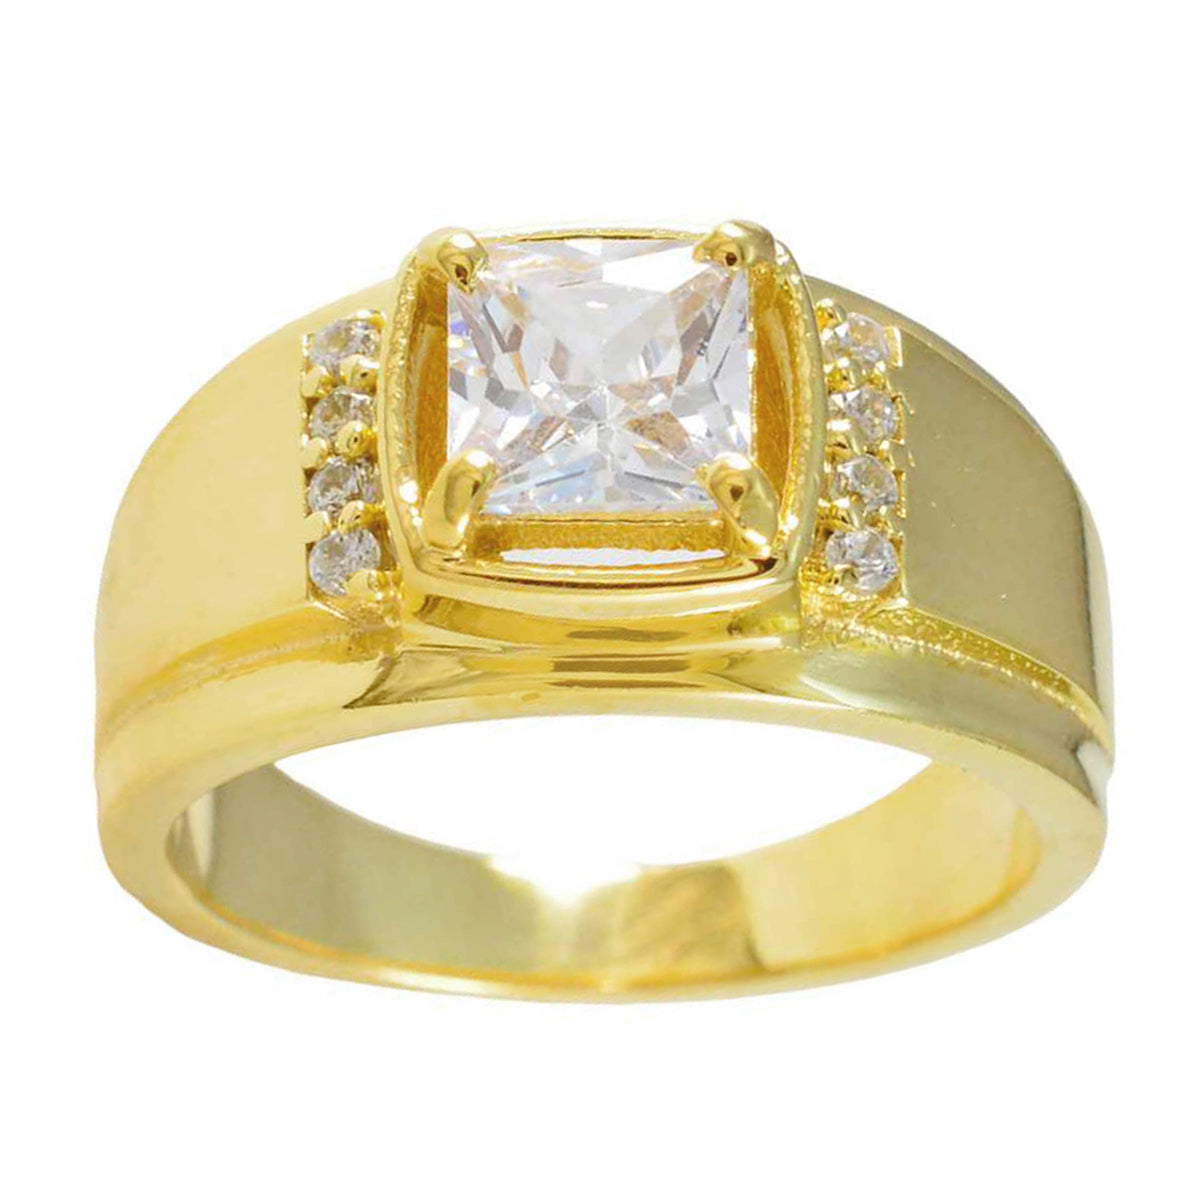 Riyo エクセレント シルバー リング イエロー ゴールド メッキ ホワイト CZ ストーン スクエア形状プロング セッティング ジュエリー 結婚指輪